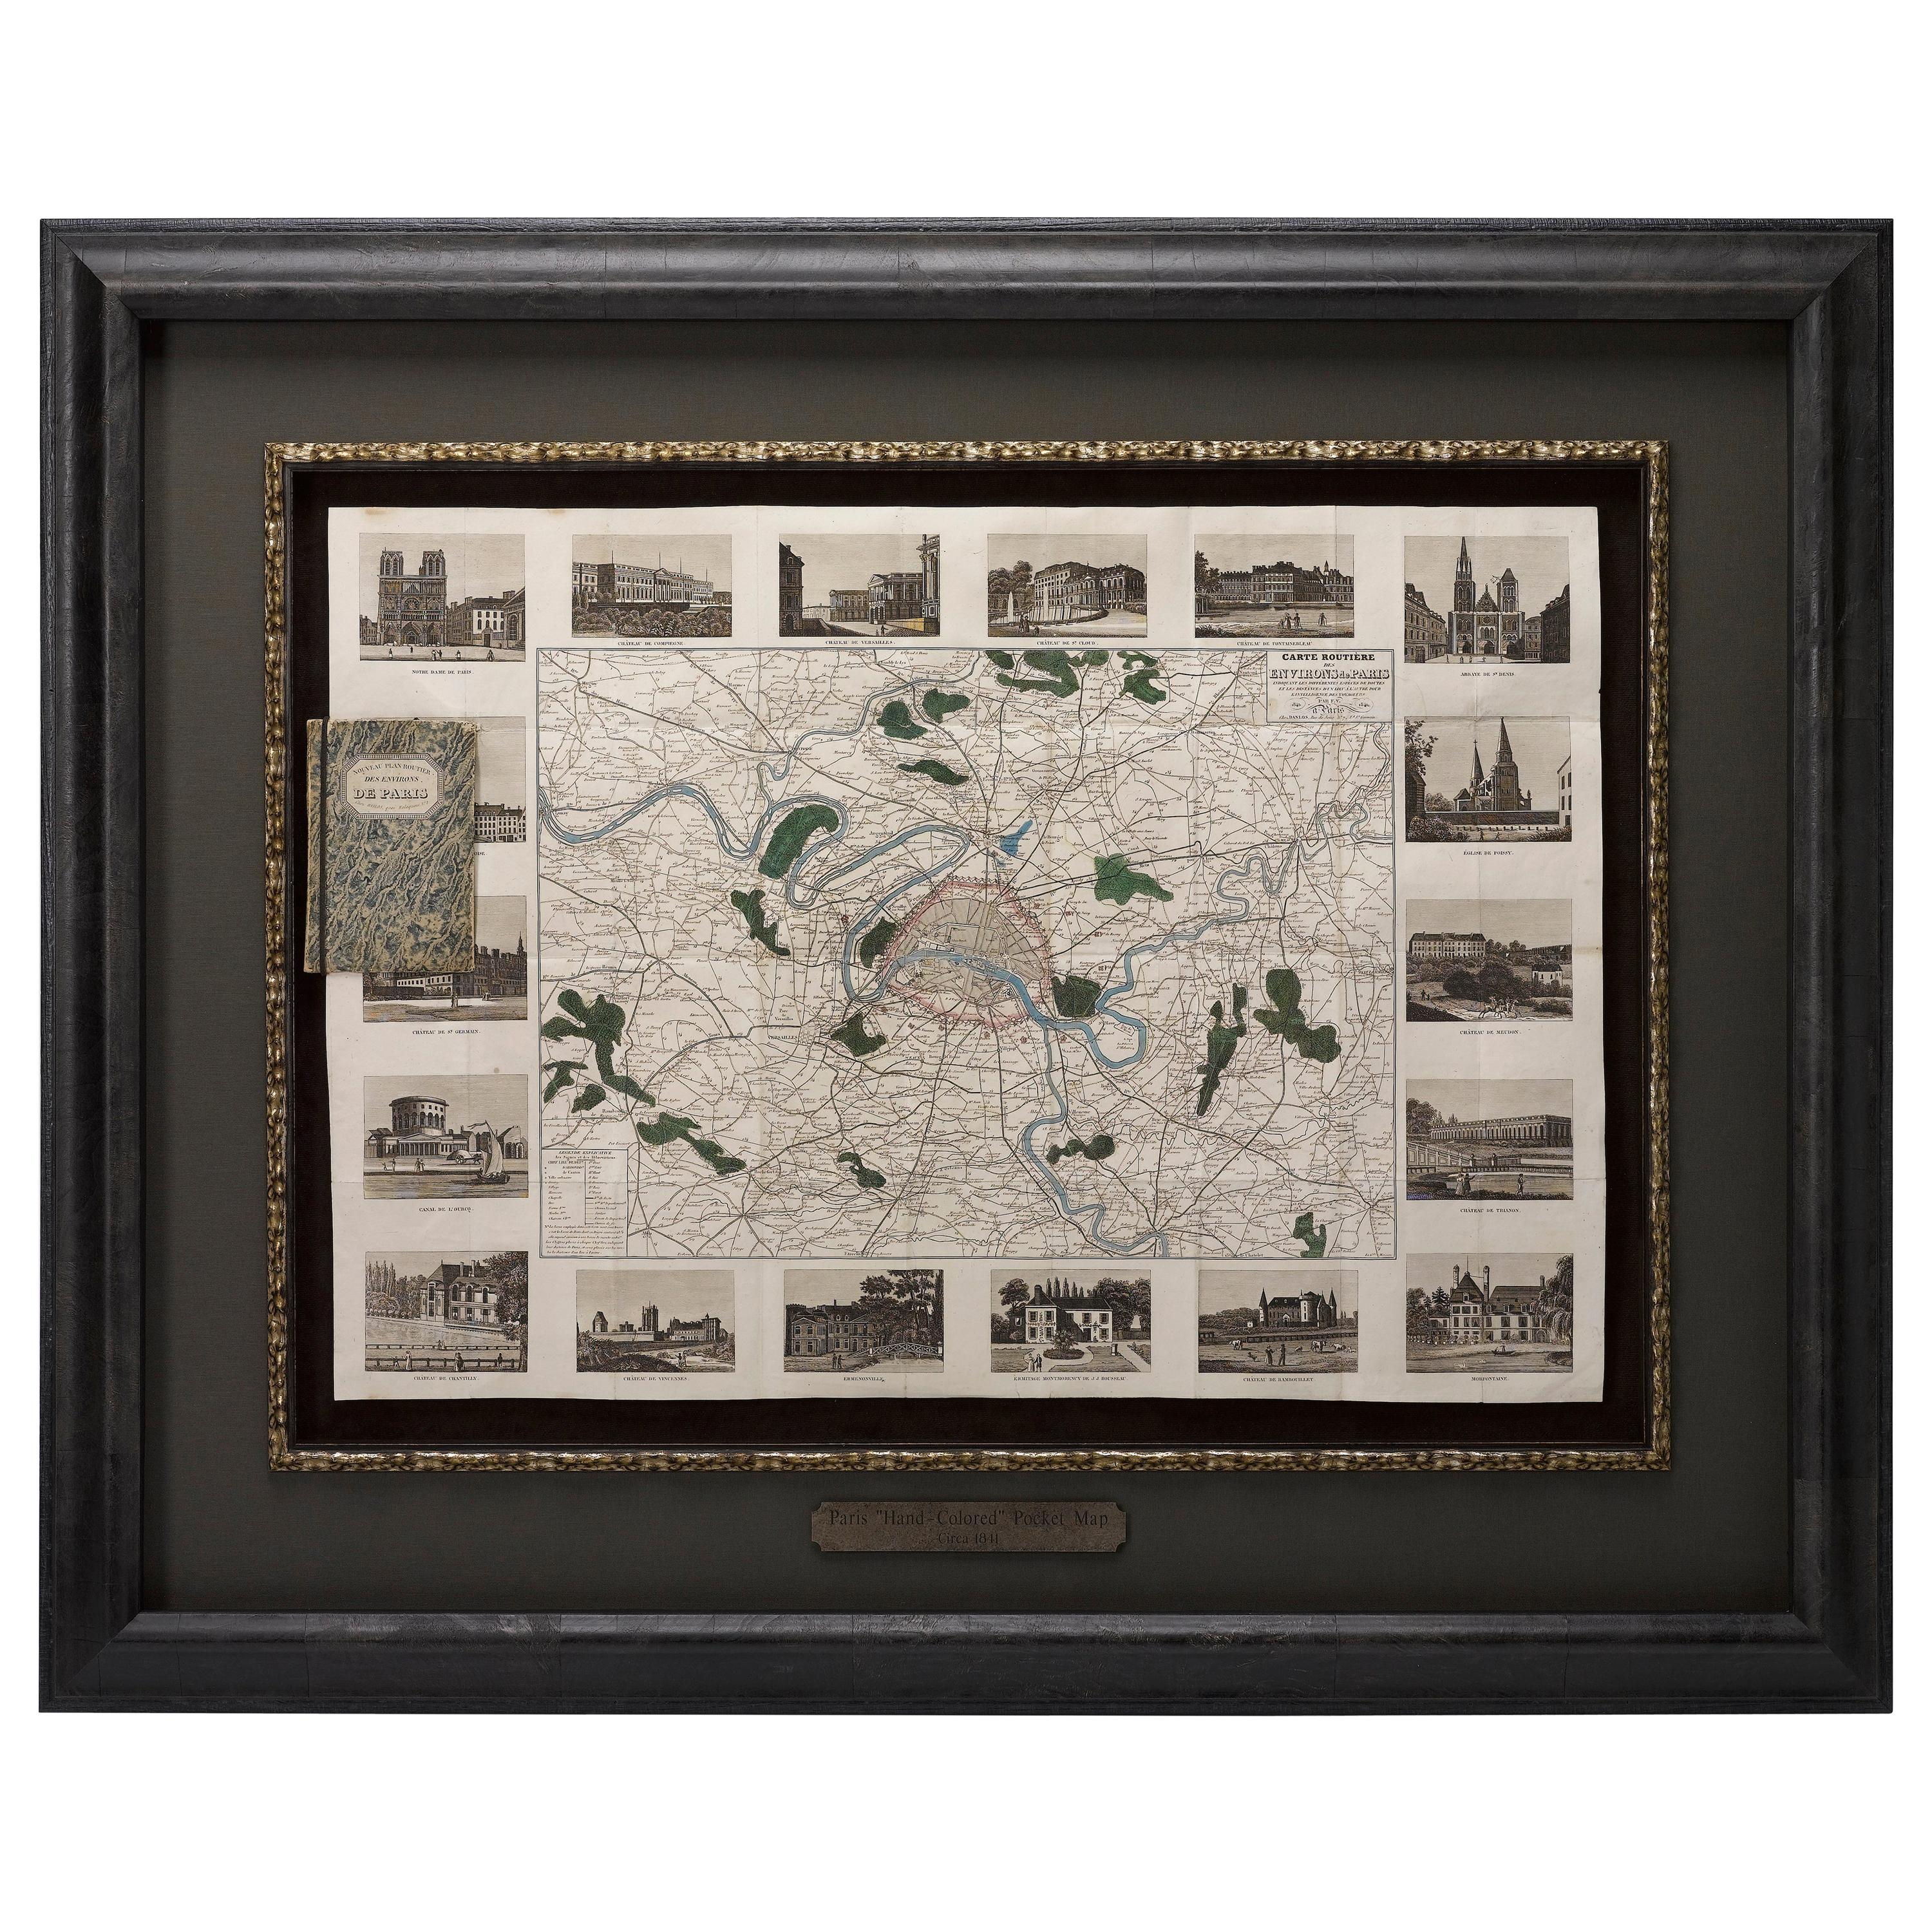 Antique Map of Paris, "Carte Routiere des Environs de Paris" 1841